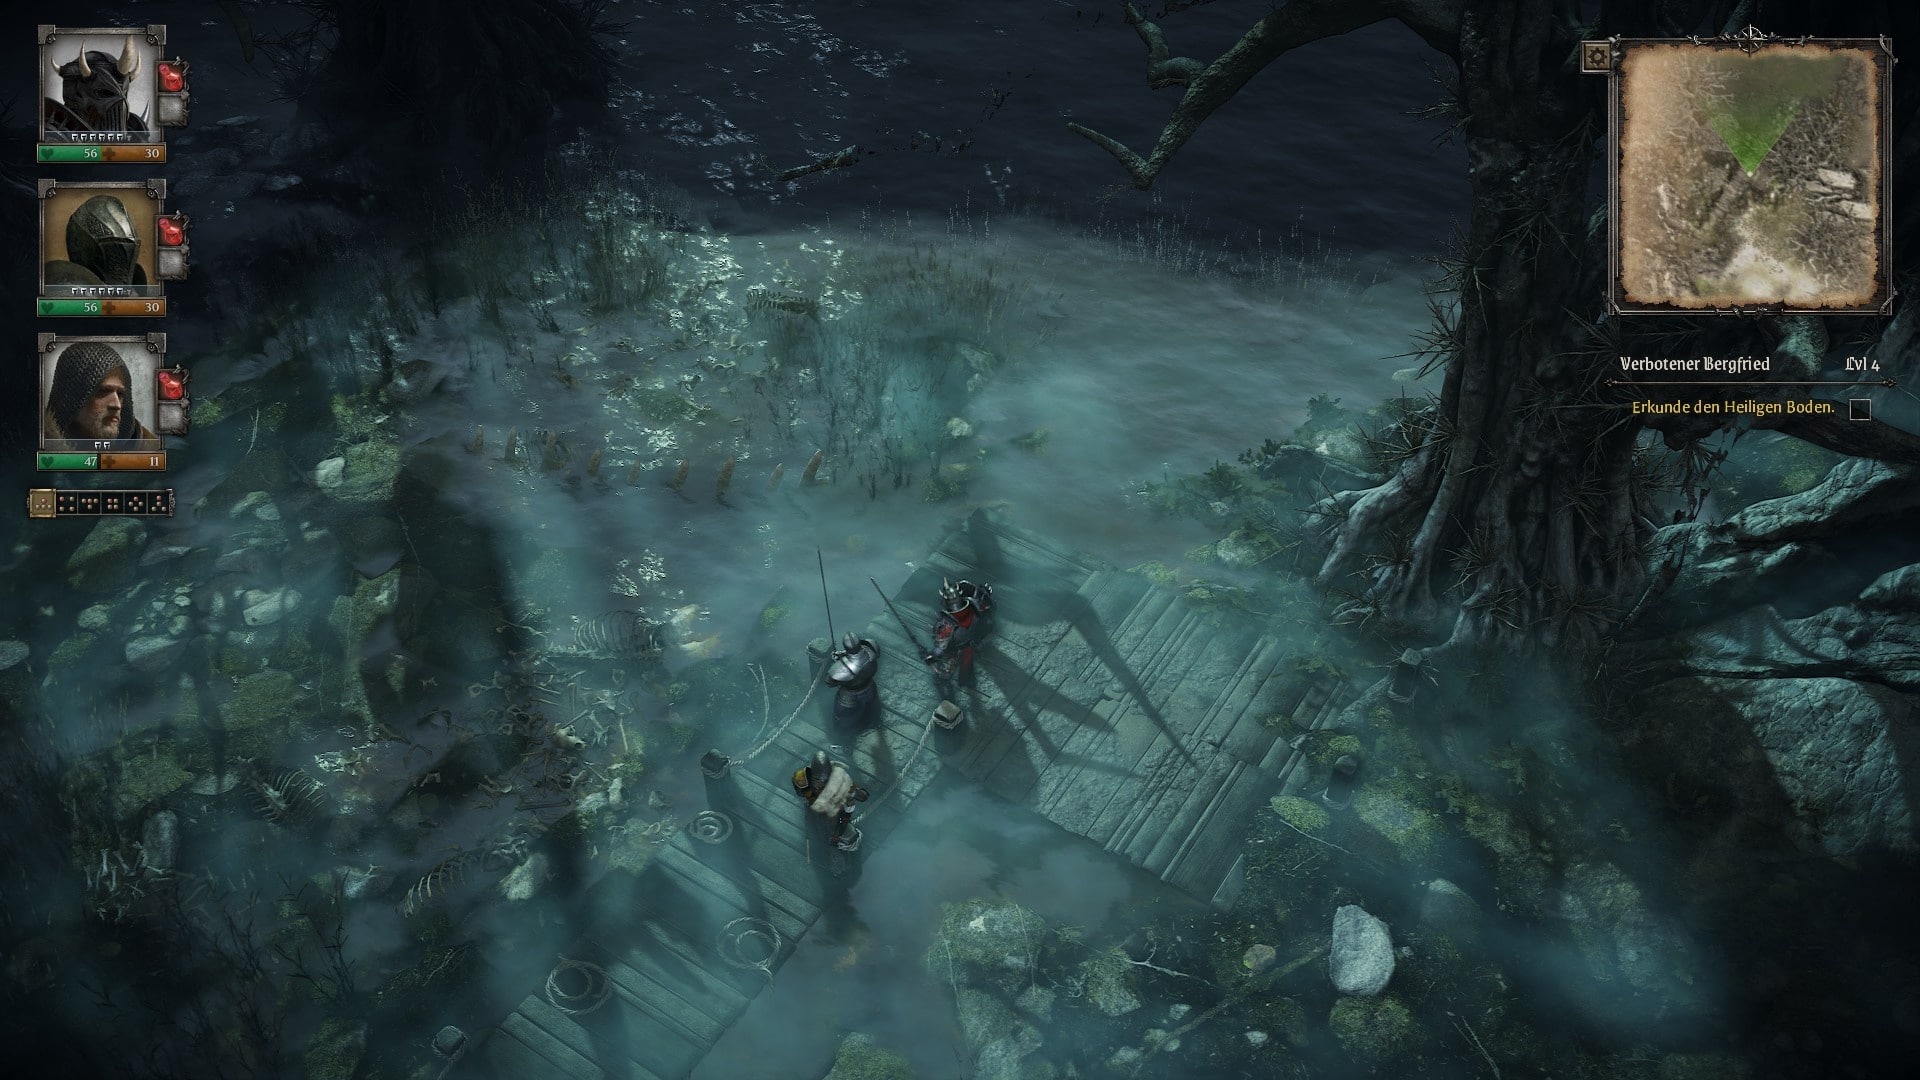 （个别关卡提供了许多视觉上的亮点，如月光下的这片沼泽。然而，特别是在游戏的后期过程中，关卡元素出现了一定的磨损。）